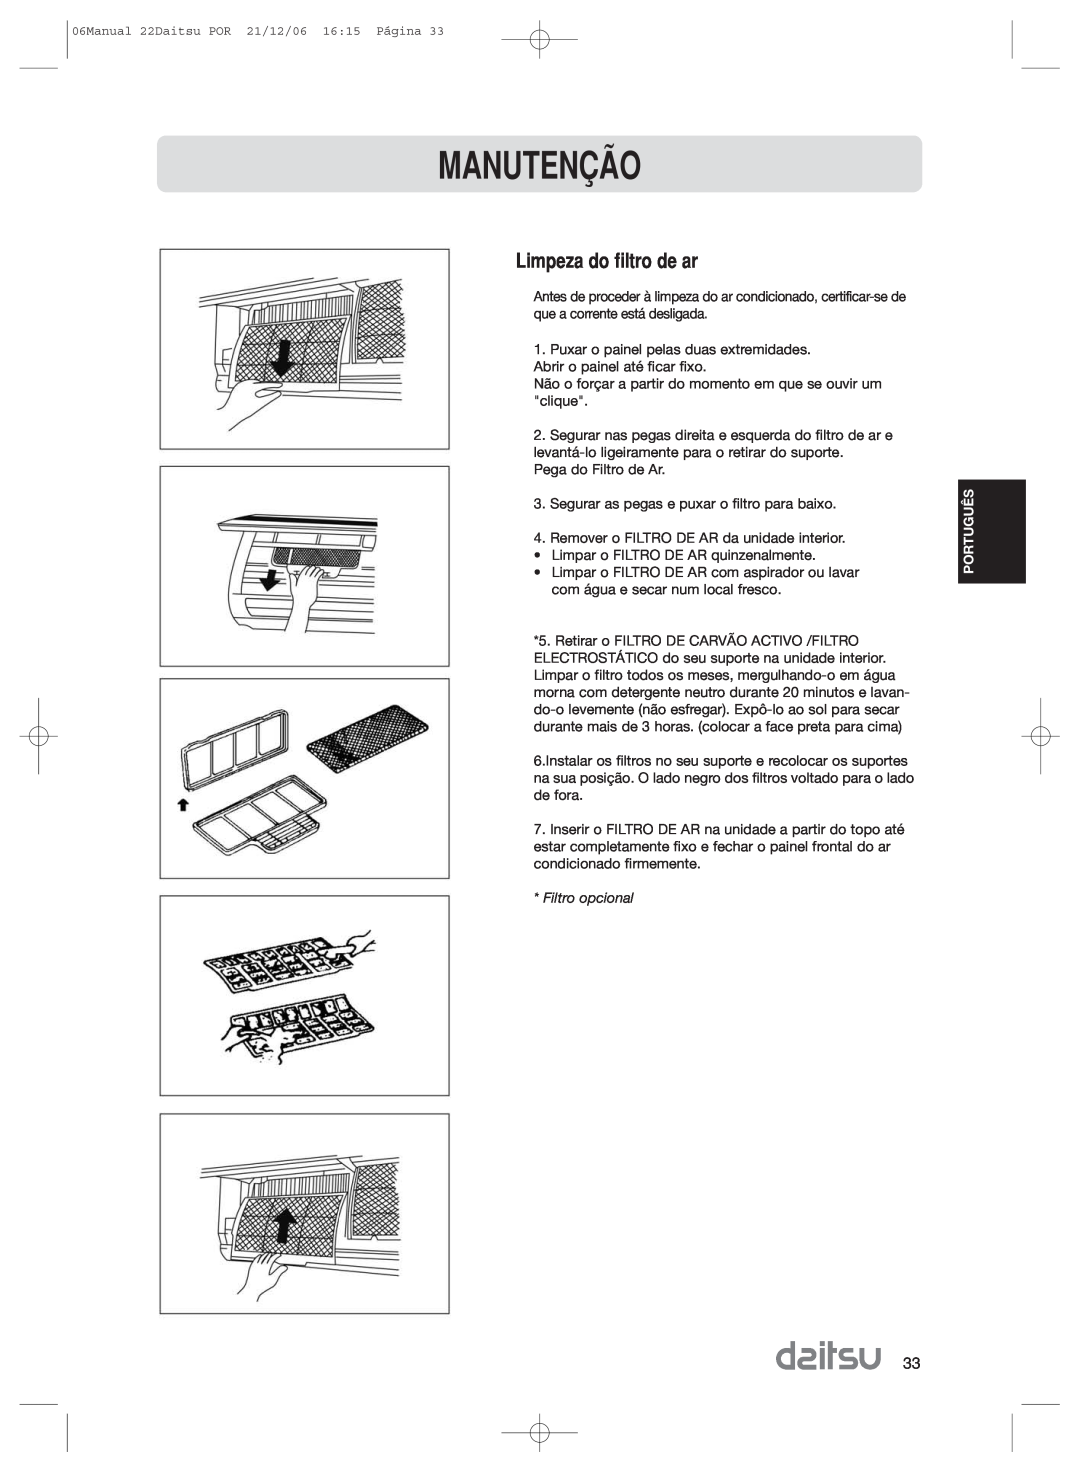 Daitsu ASD 129U11, ASD 9U2 operation manual Limpeza do filtro de ar, Manuten‚Ìo, Filtro opcional 